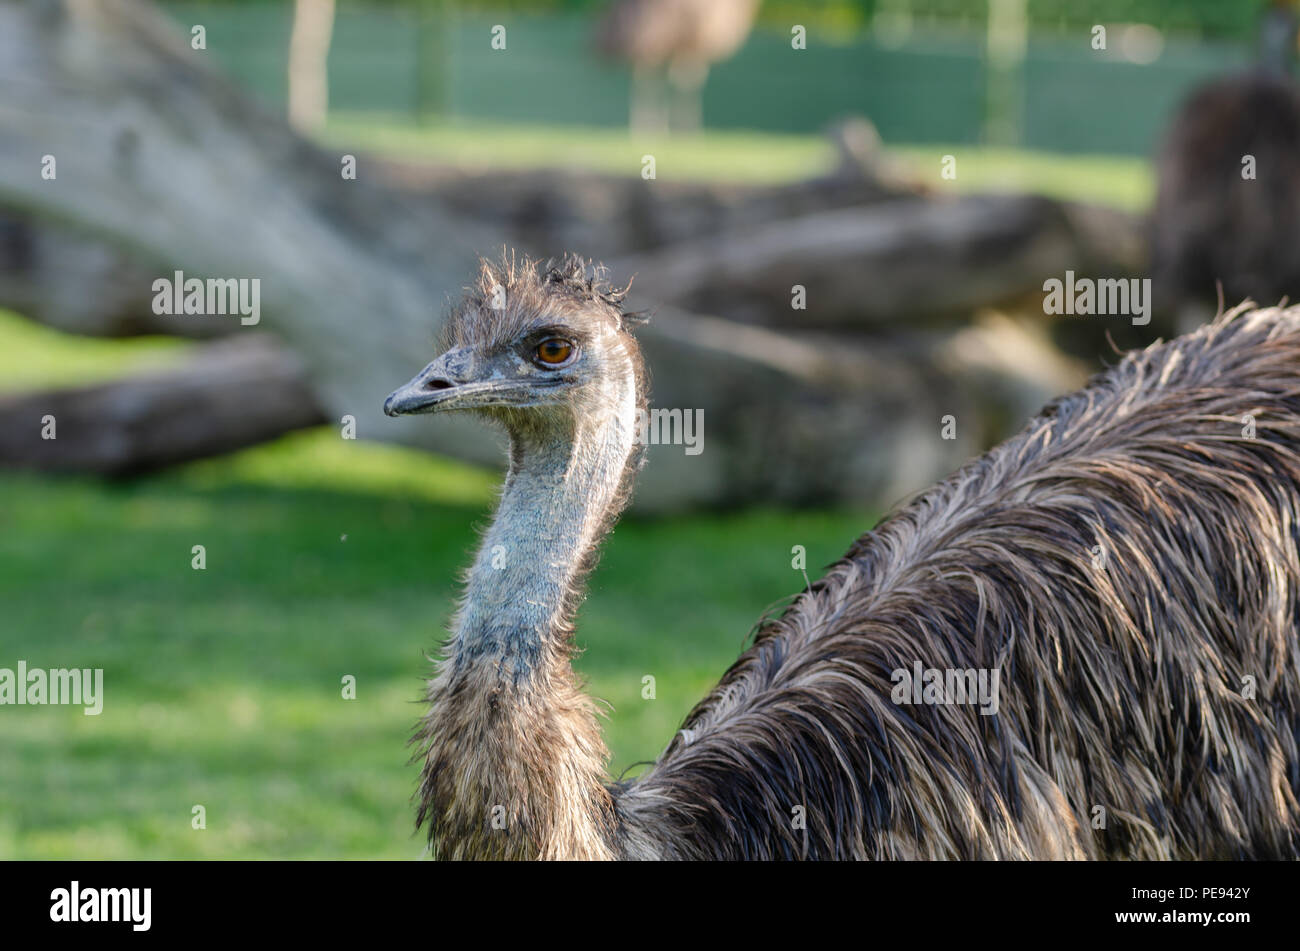 Portrait of a South American ostrich Nandu close-up Stock Photo